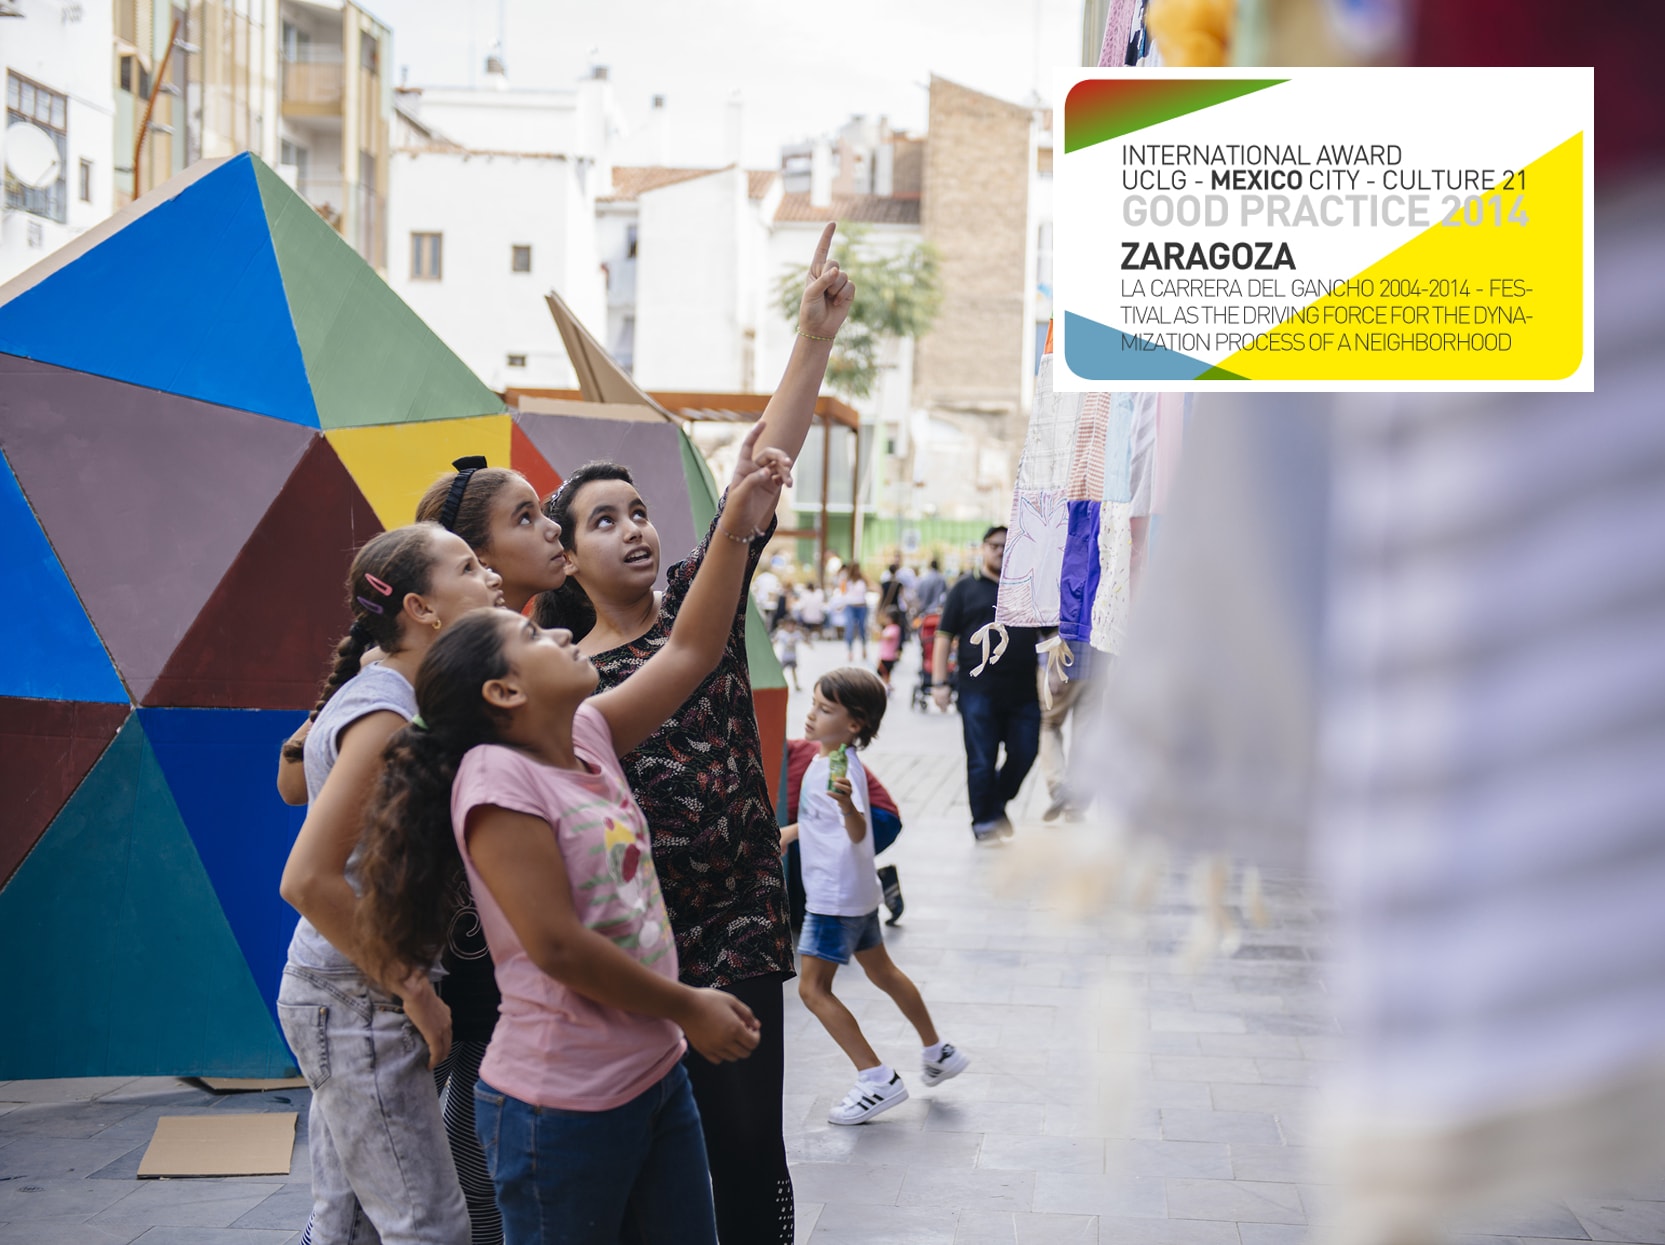 La Carrera del Gancho: la fiesta, motor del proceso de dynamización de un barrio, Zaragoza